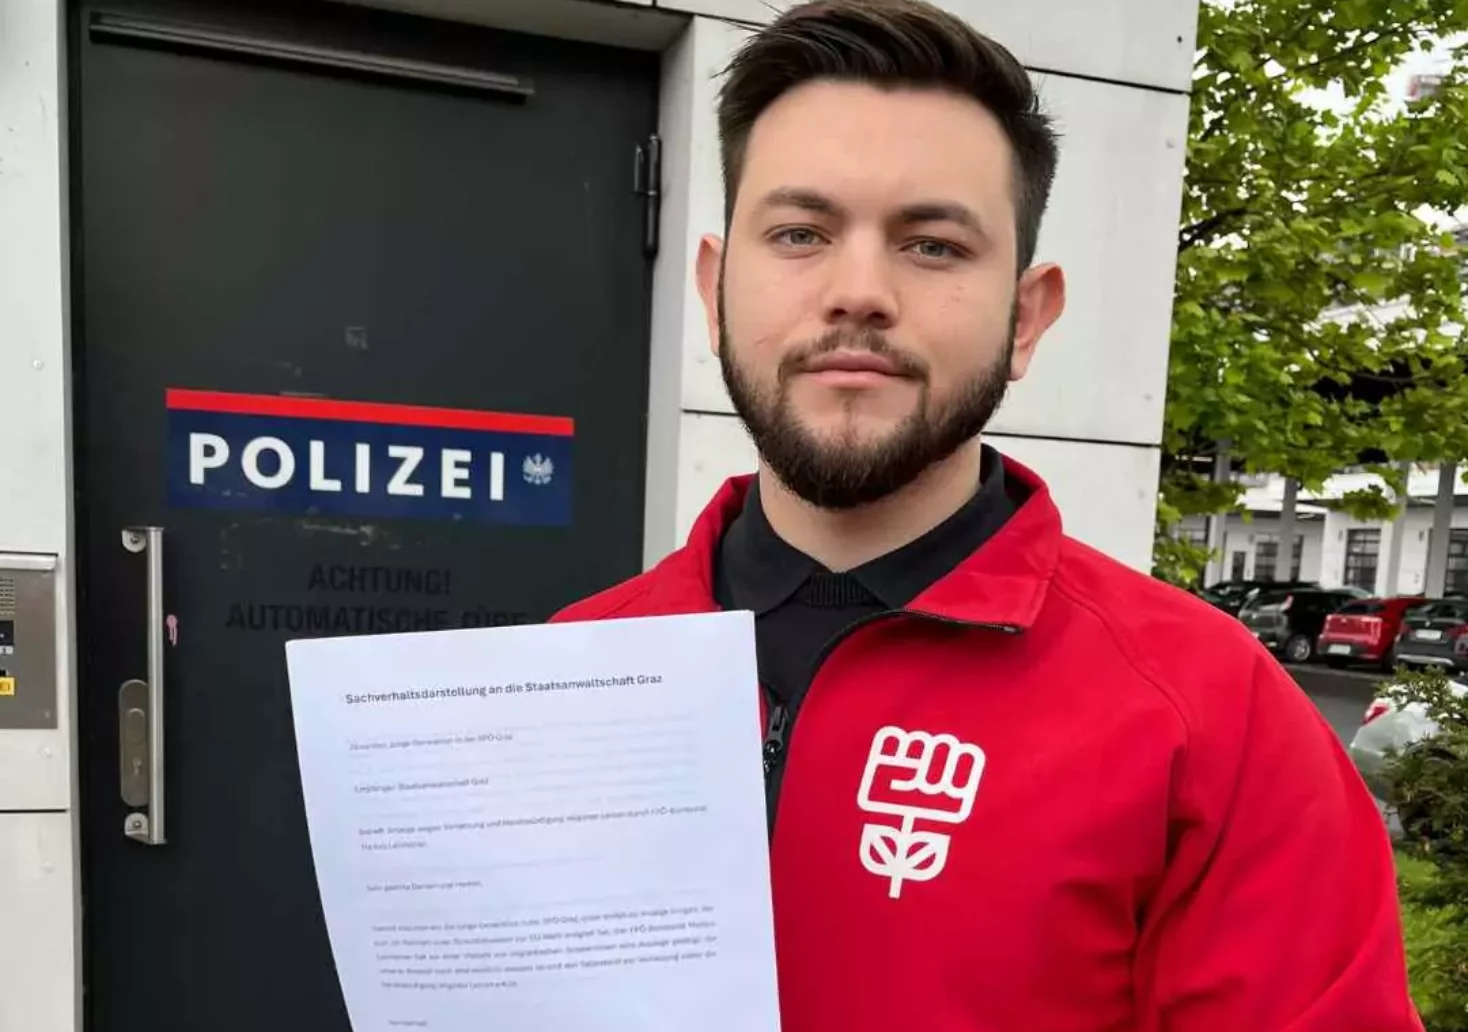 Foto in Beitrag von 5min.at: Zu sehen ist Ales Plavotic, Vorsitzender der Jugnen Generation der SPÖ Graz.